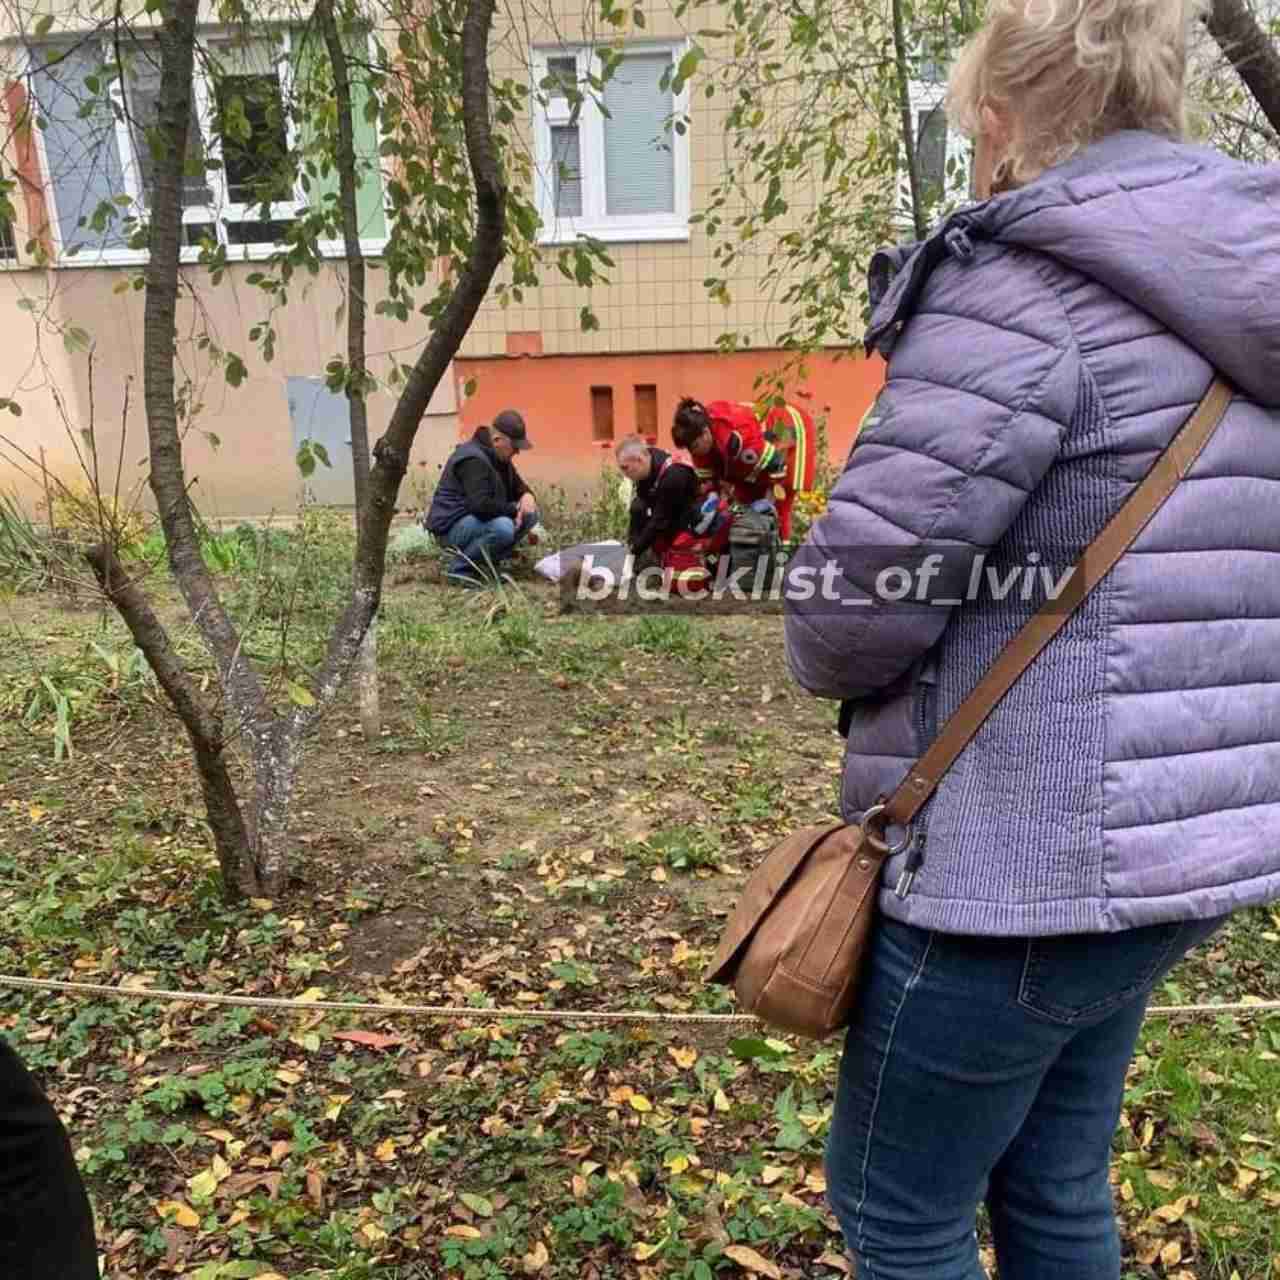 У Львові дівчина випала з вікна будинку (ФОТО)